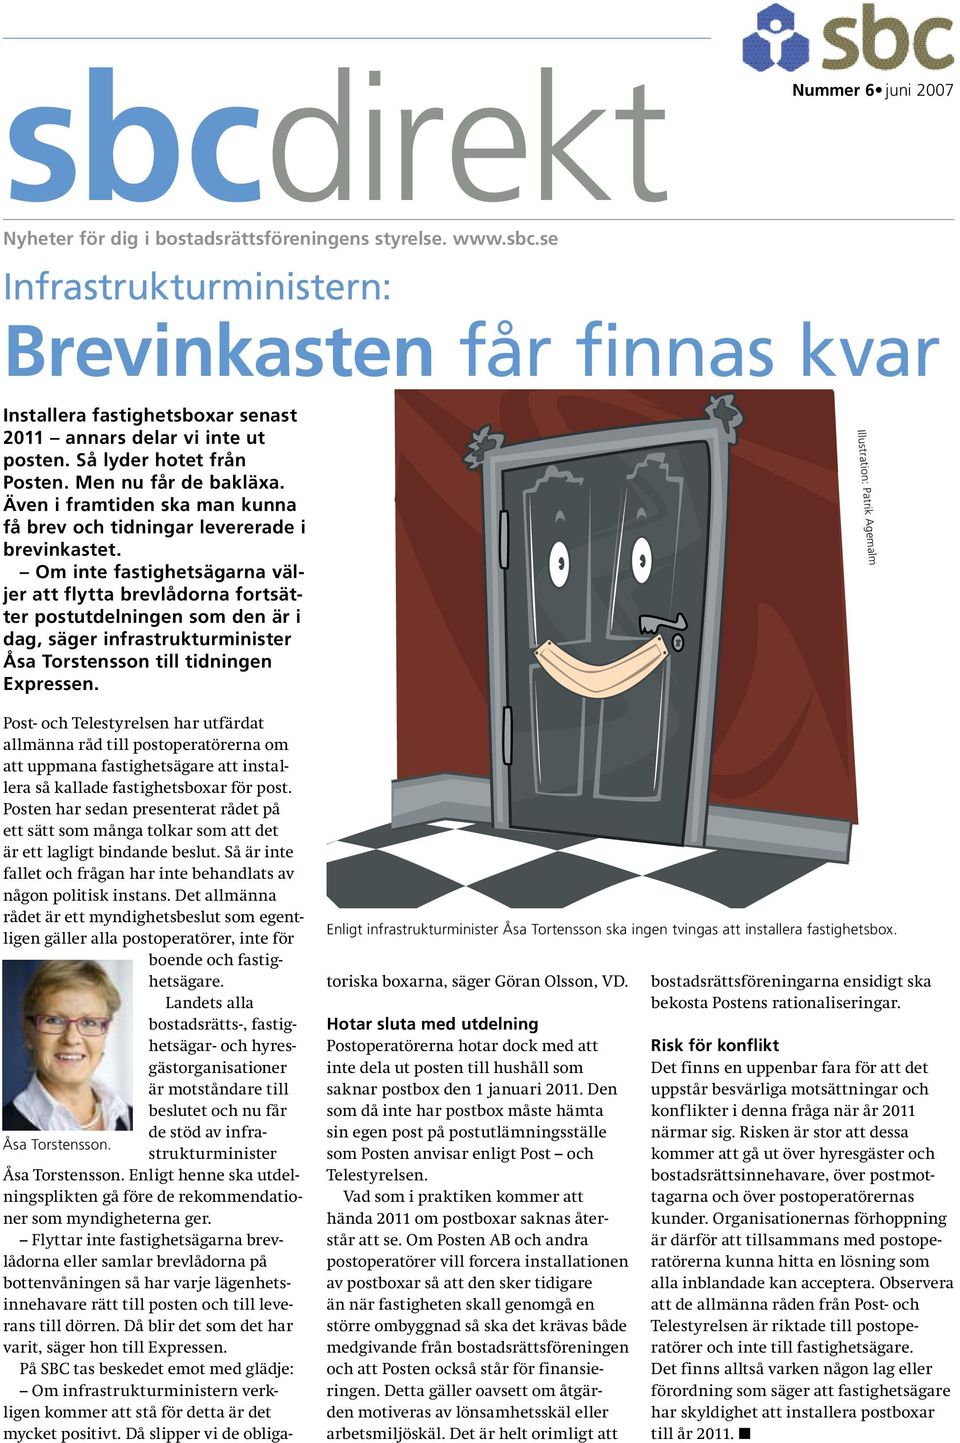 Om inte fastighetsägarna väljer att flytta brevlådorna fortsätter postutdelningen som den är i dag, säger infrastrukturminister Åsa Torstensson till tidningen Expressen.